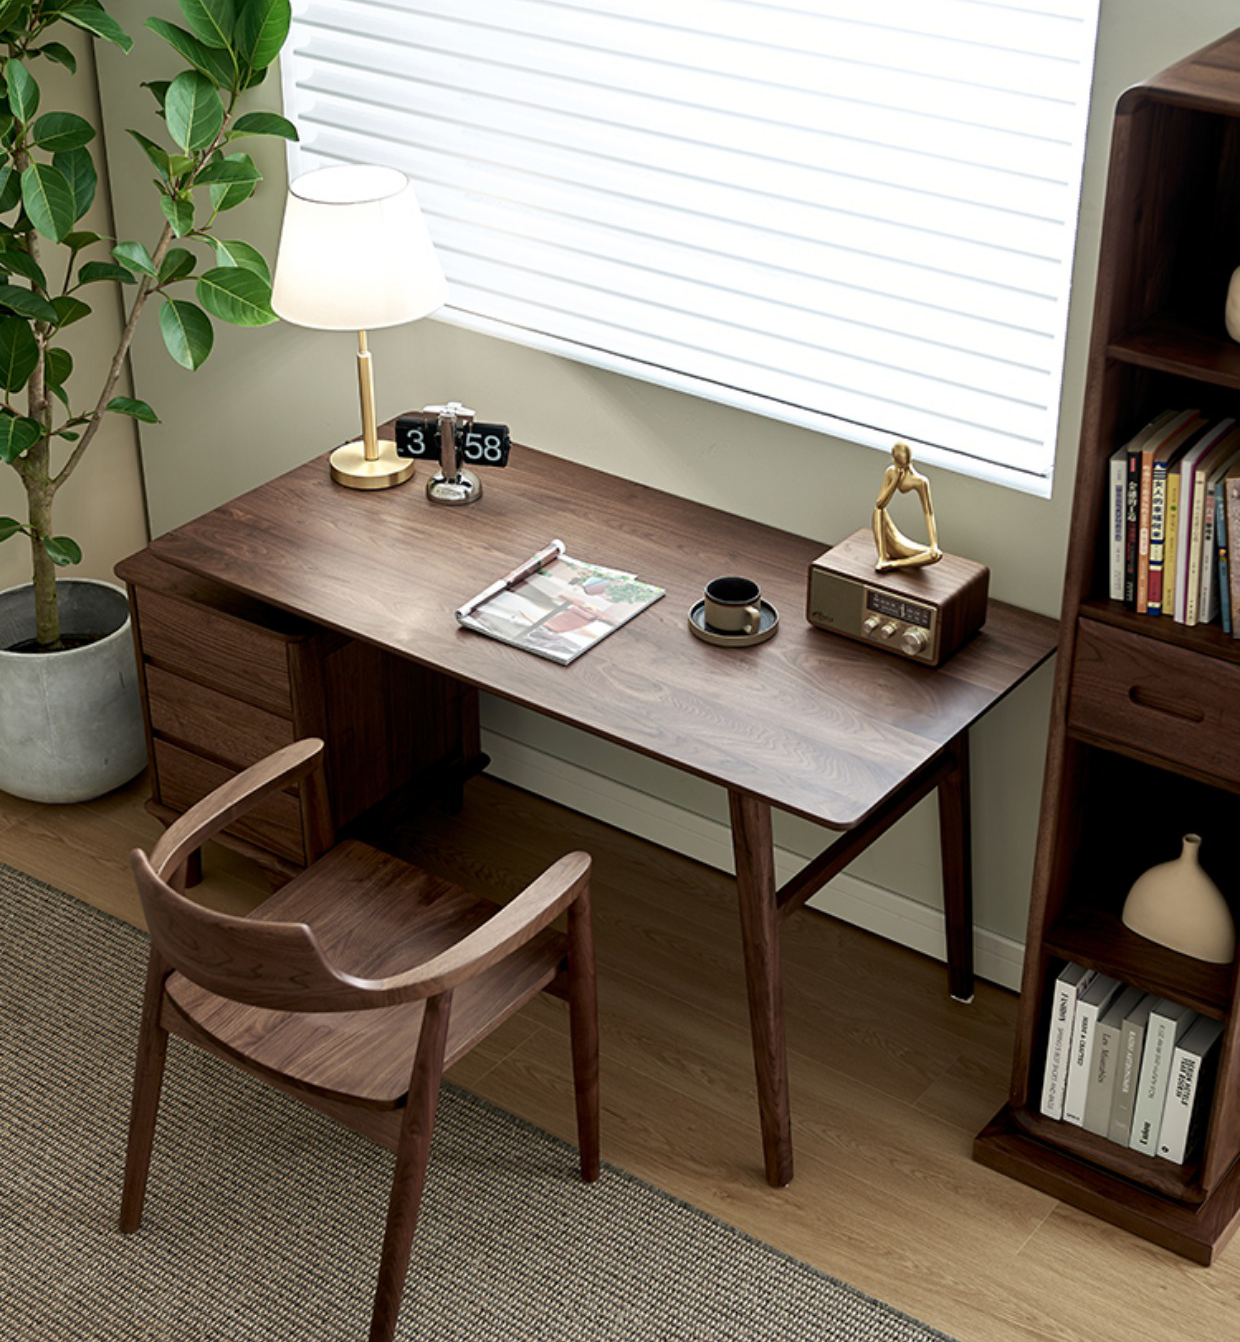 مكاتب من خشب الجوز الصلب مع درج صغير، مكتب من خشب الجوز، مكتب من خشب الجوز الأسود